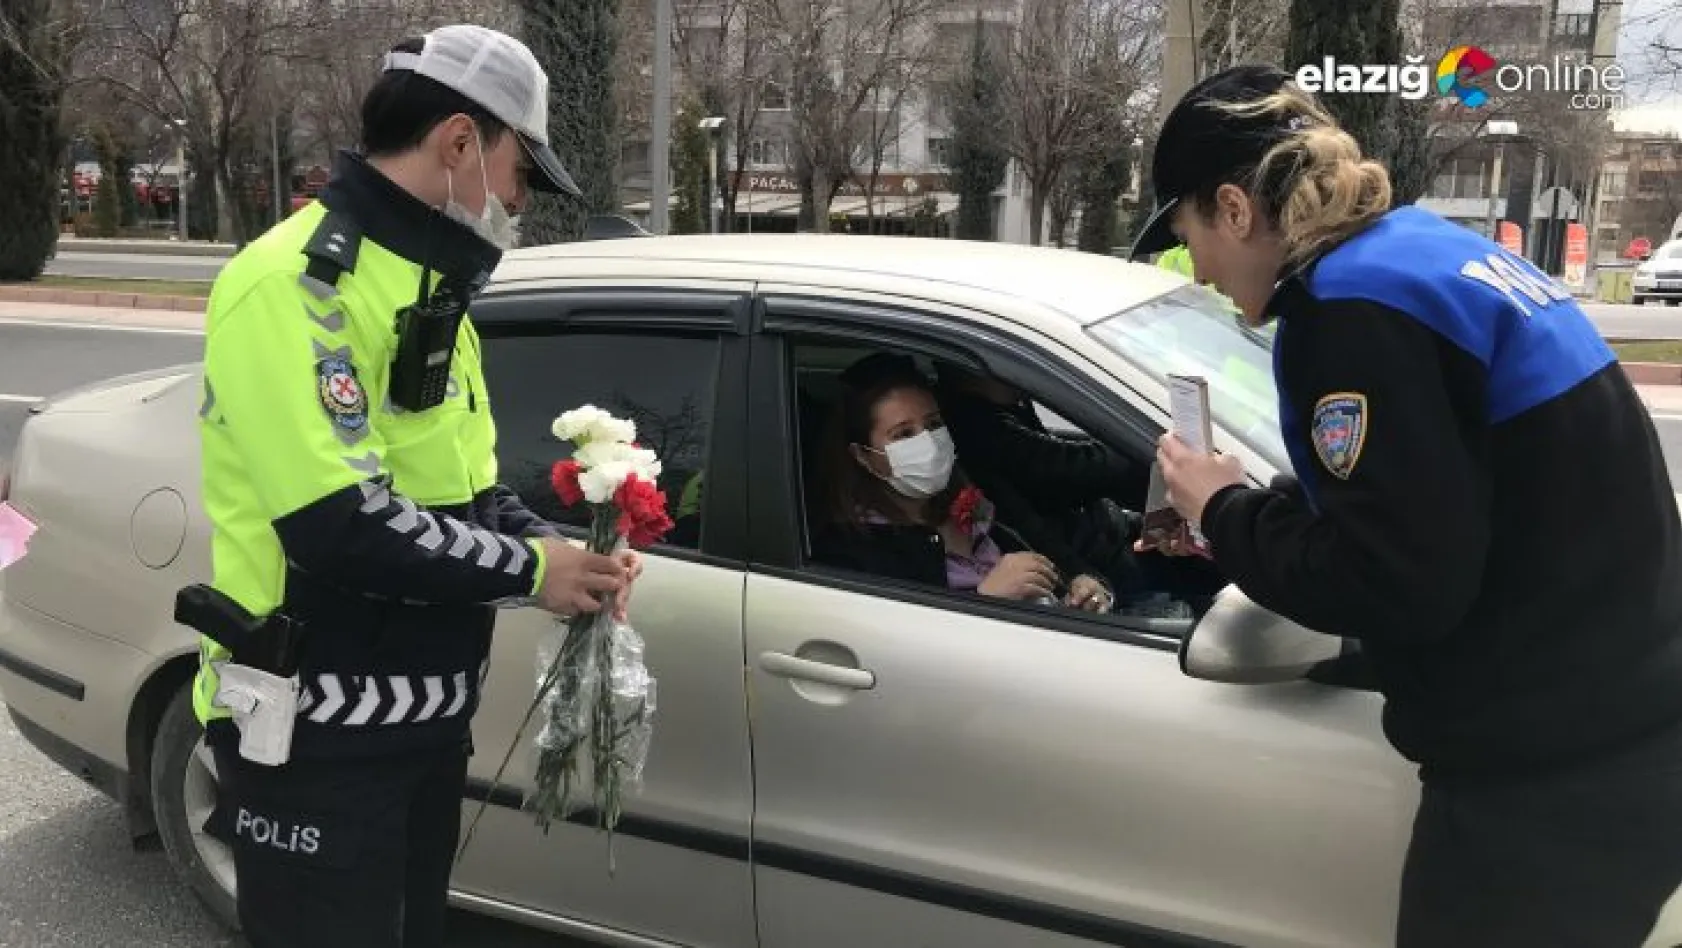 Elazığ polisinden kadın sürücülere karanfil